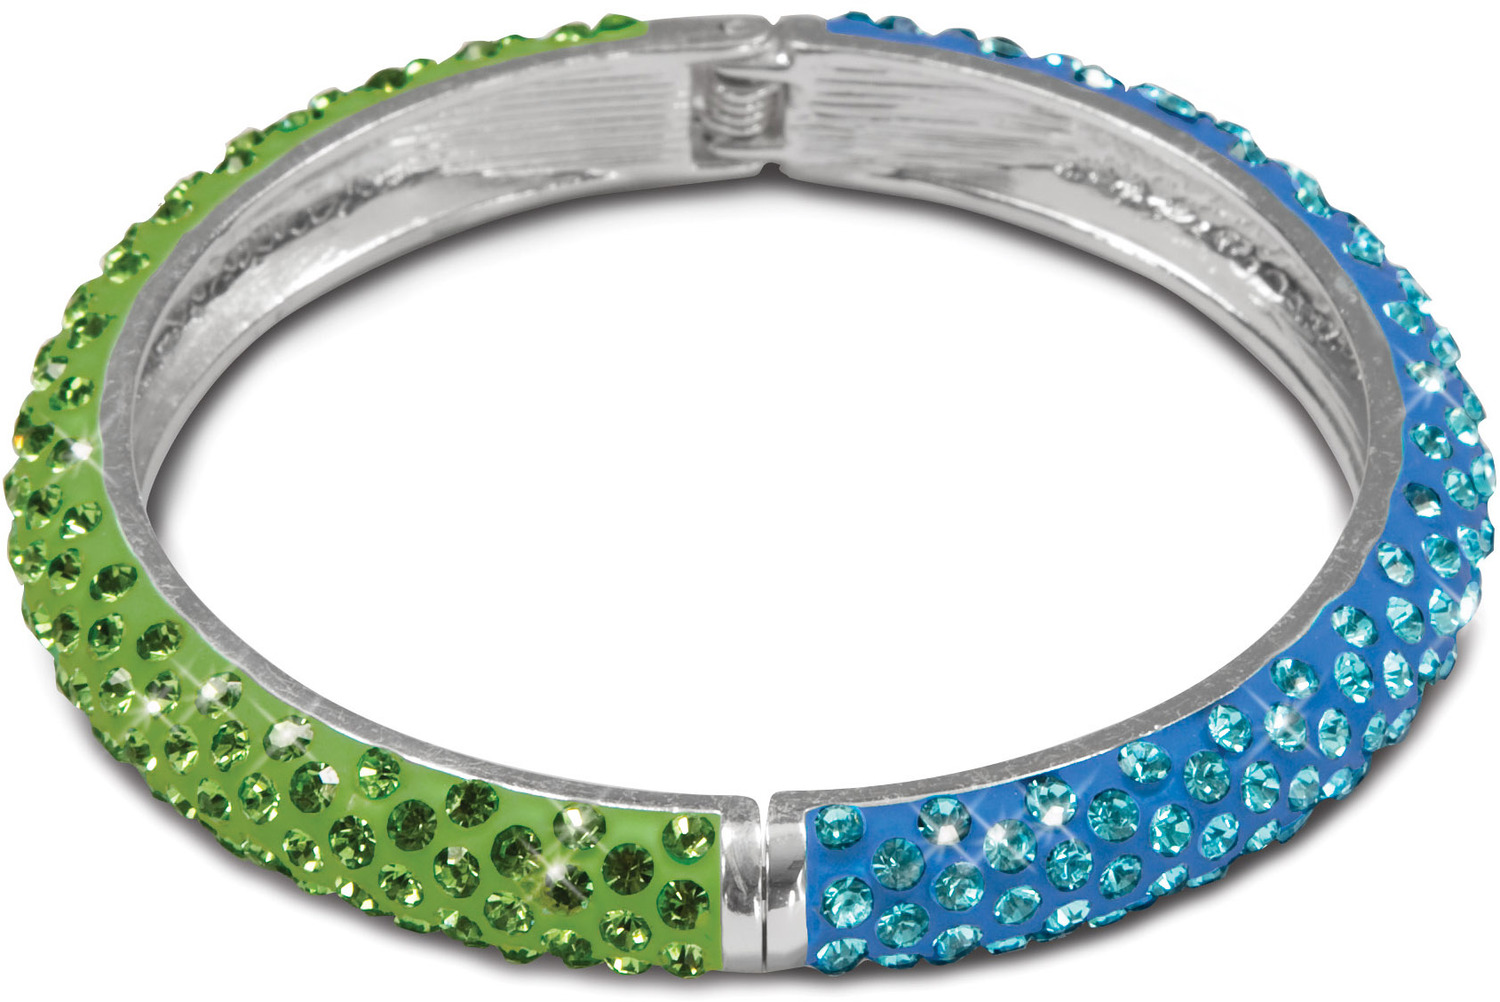 Light Blue & Green Bracelet by H2Z - Jewelry - Light Blue & Green Bracelet - 2.64" Crystal Bangle Bracelet